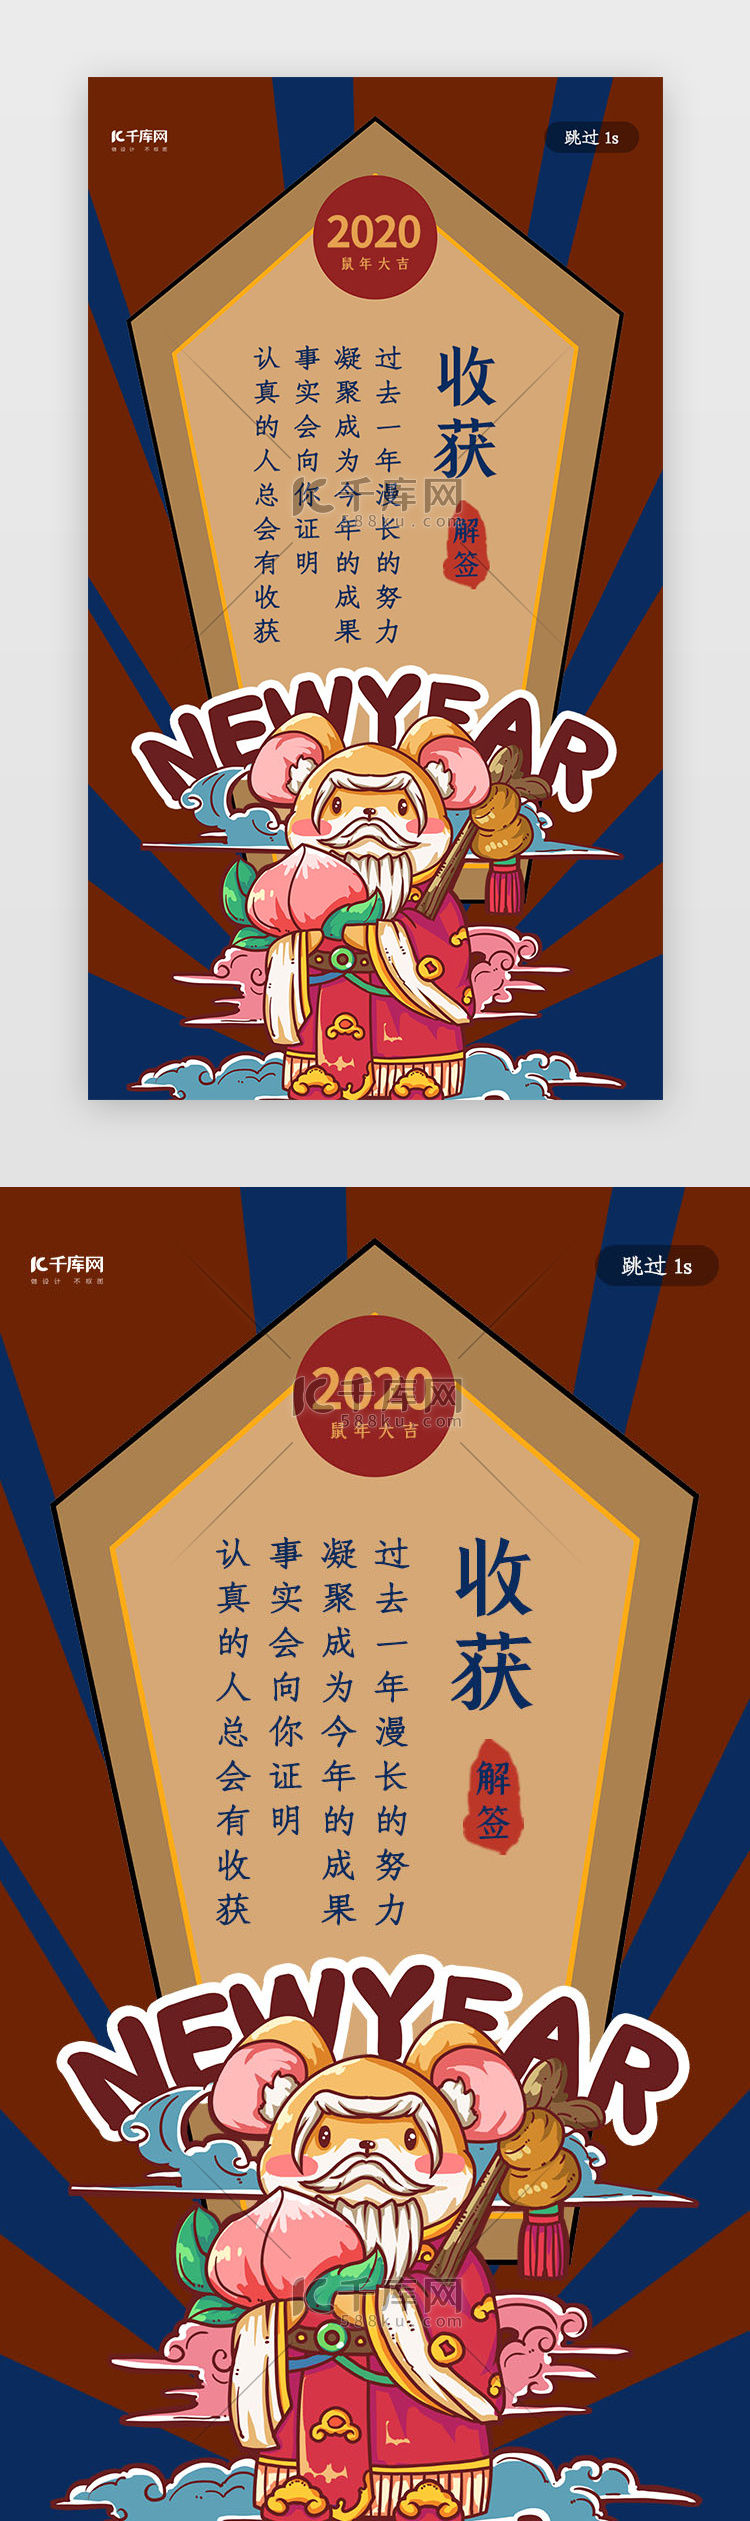 中国风鼠年新年签之收获闪屏启动页引导页闪屏